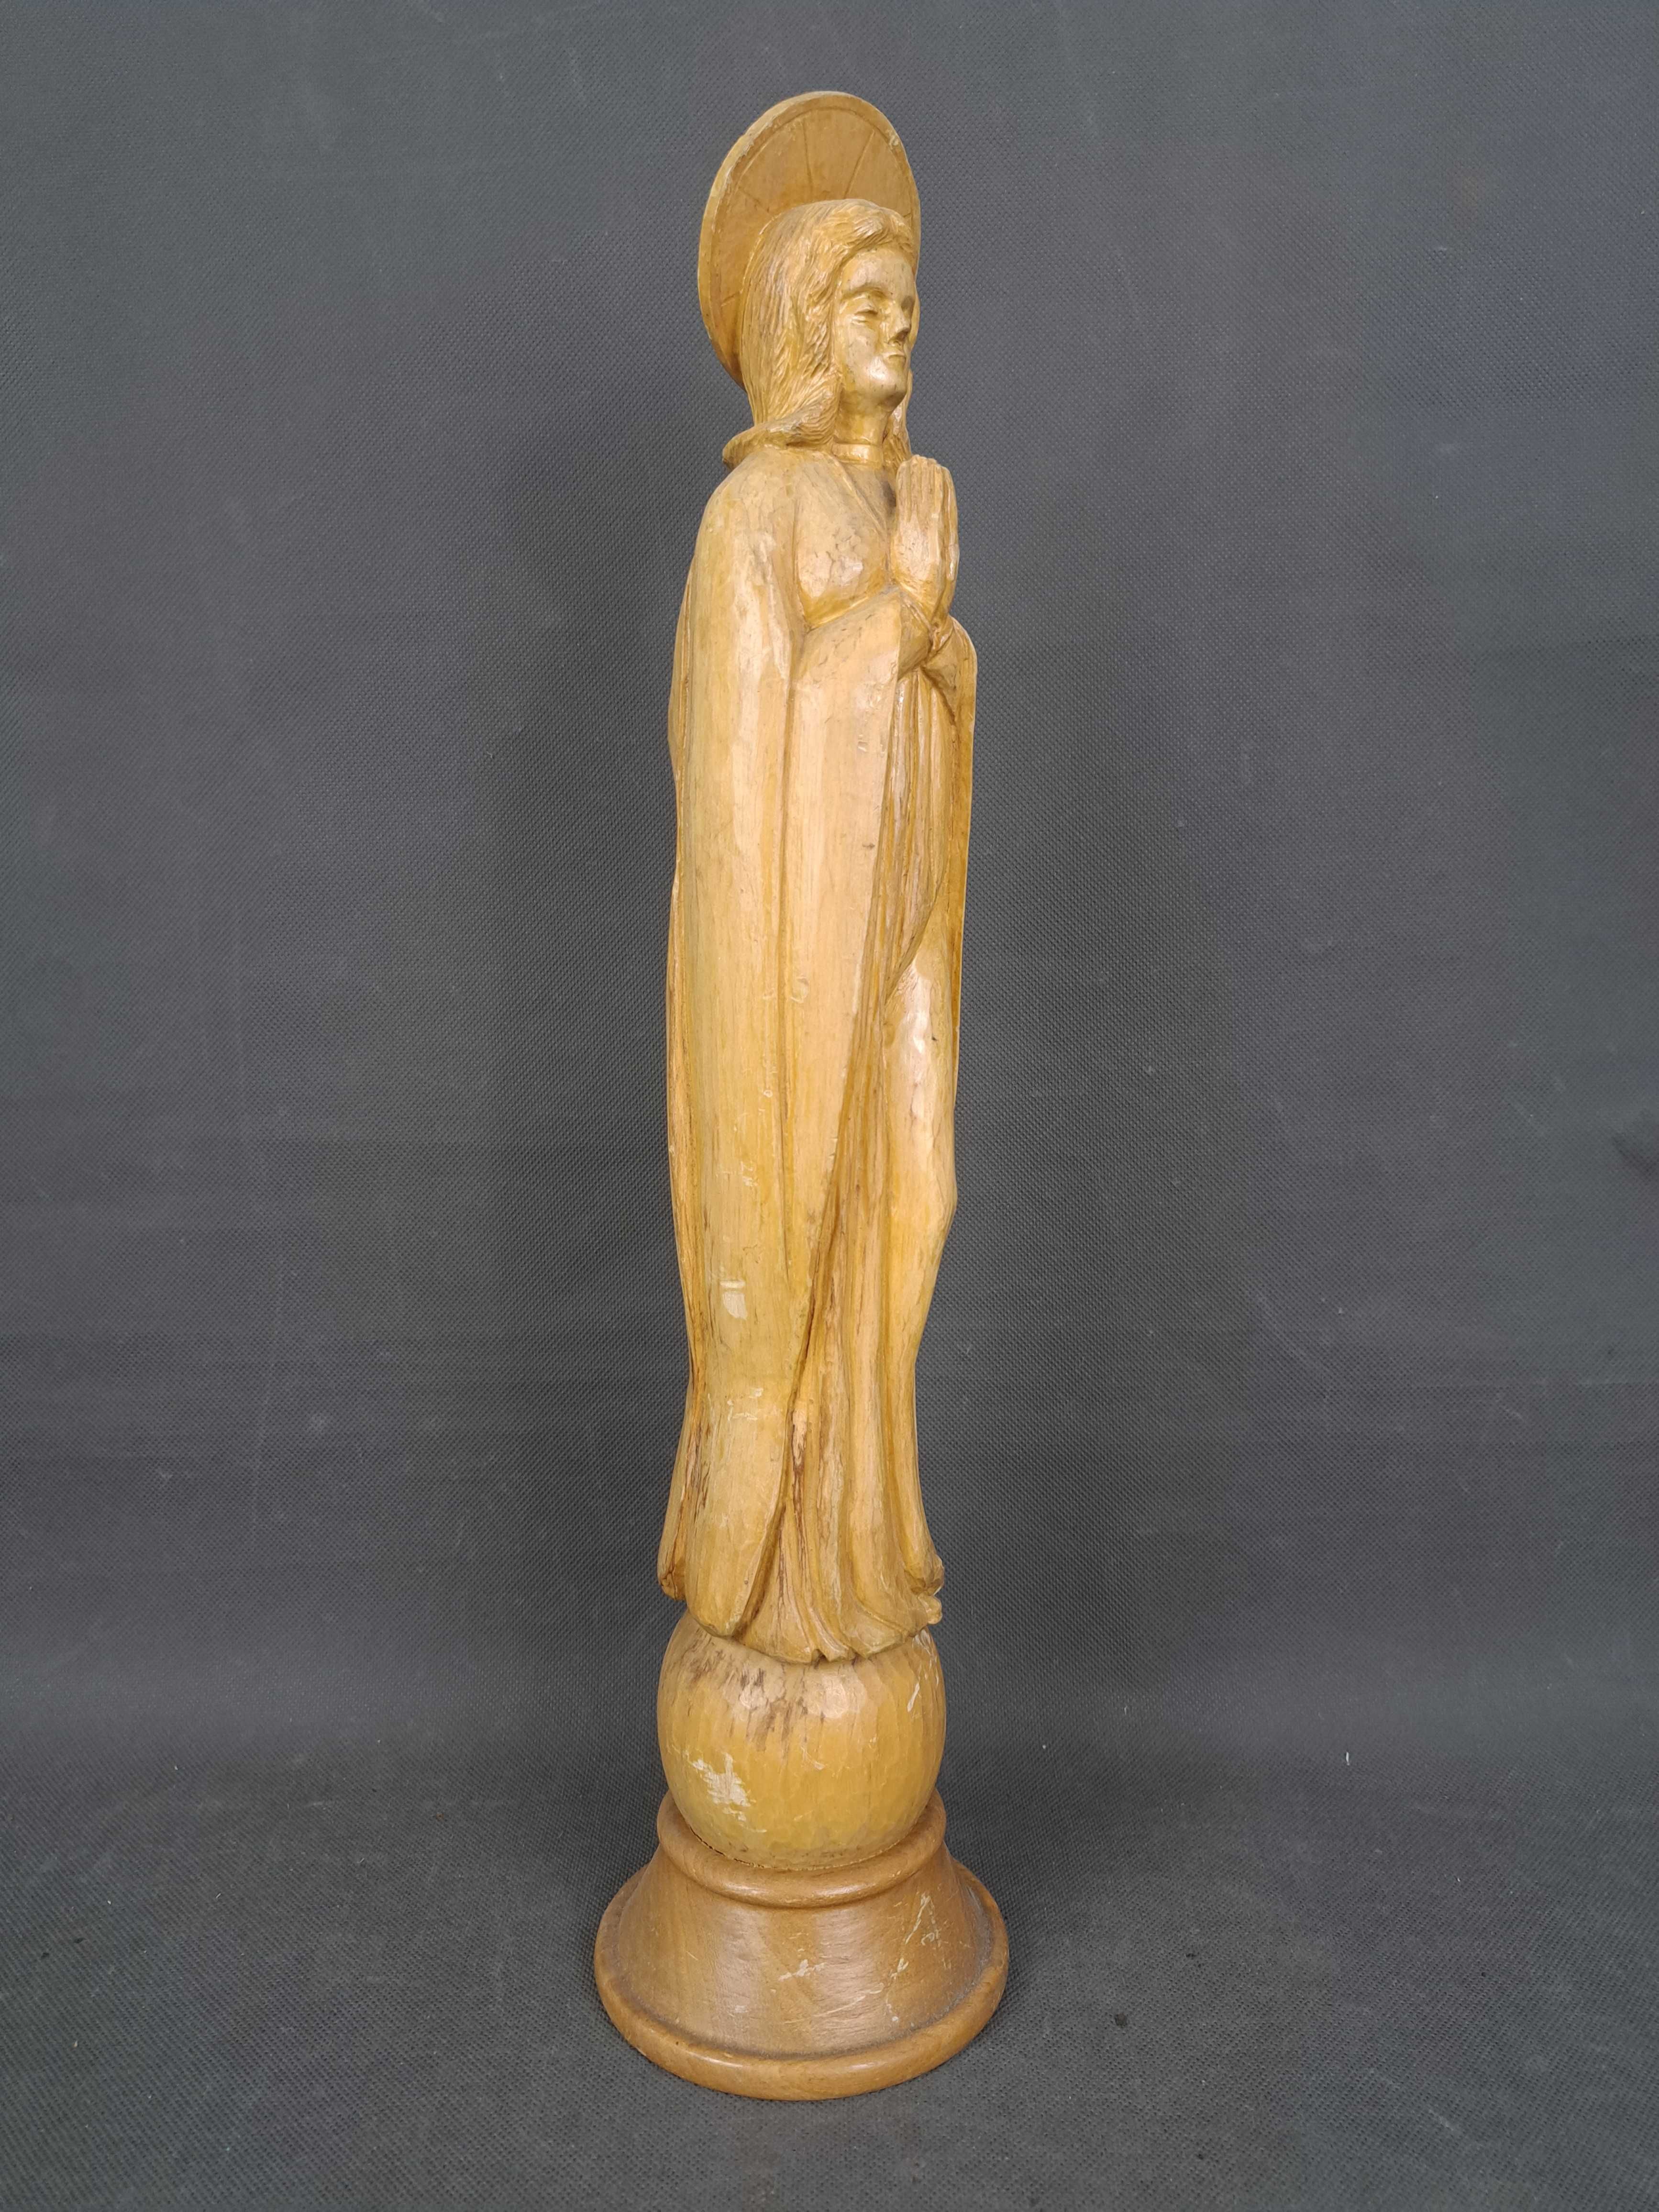 Matka Boska, Madonna, rzeźba drewniana, K. Behle 1968 r.